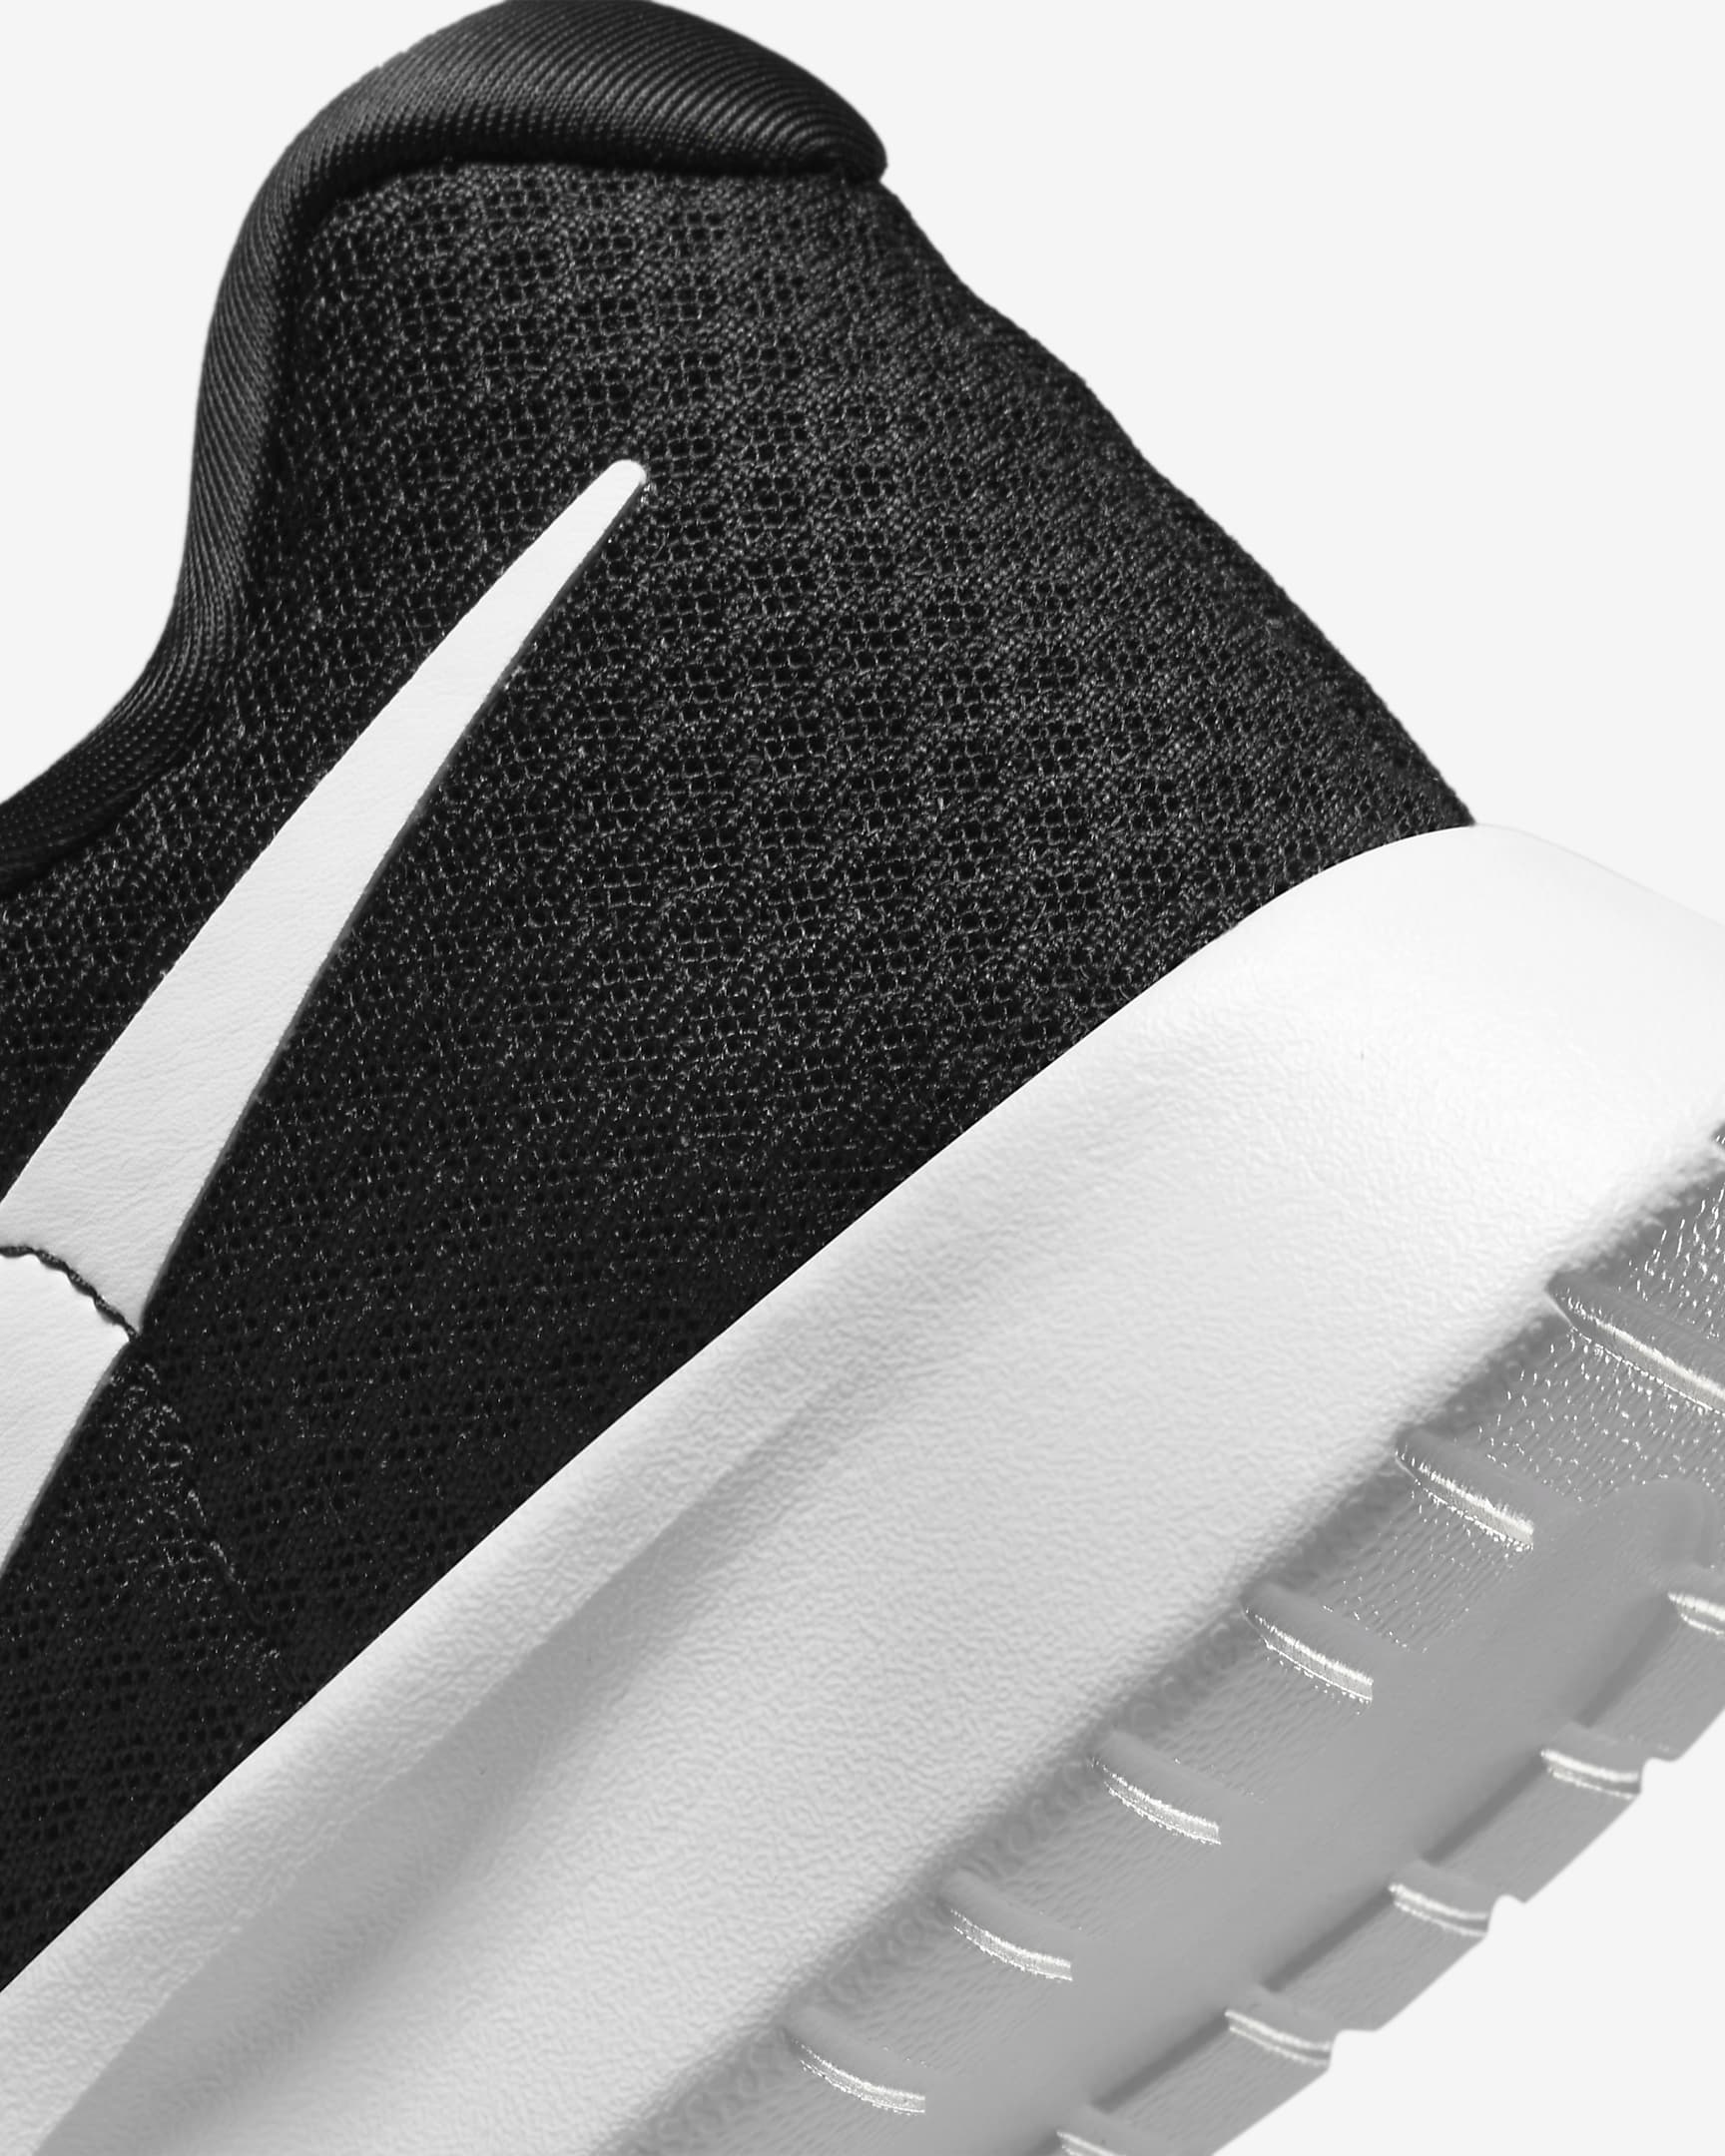 Nike Tanjun EasyOn Women's Shoes - Black/Volt/Black/White